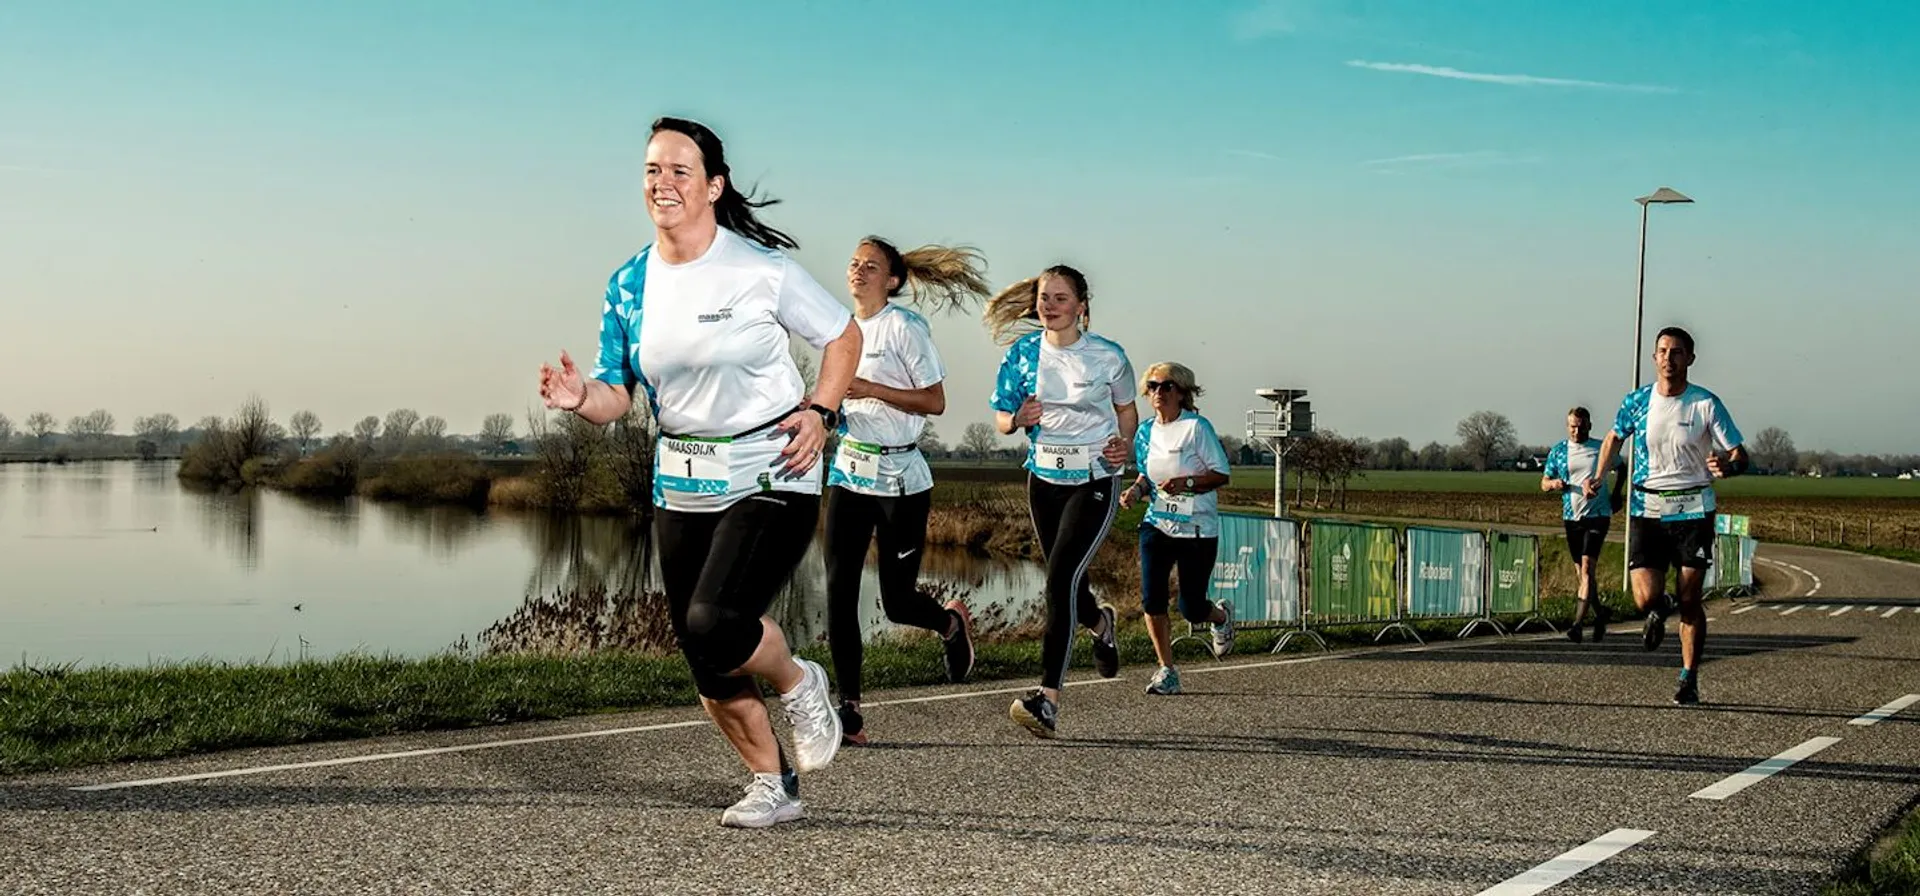 Maasdijk Marathon